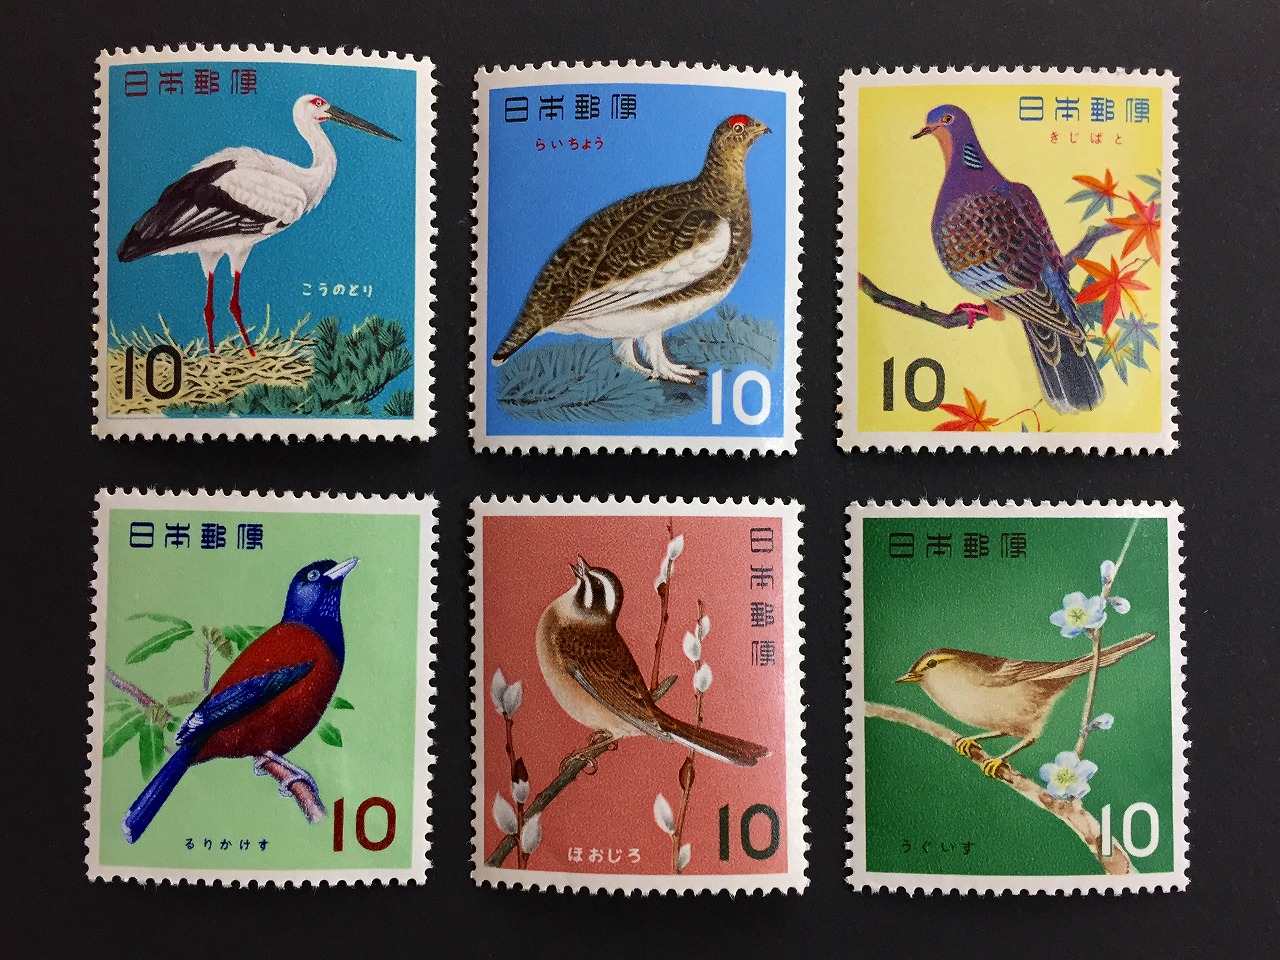 1冊の本のようにしてありますアメリカの鳥の記念切手集